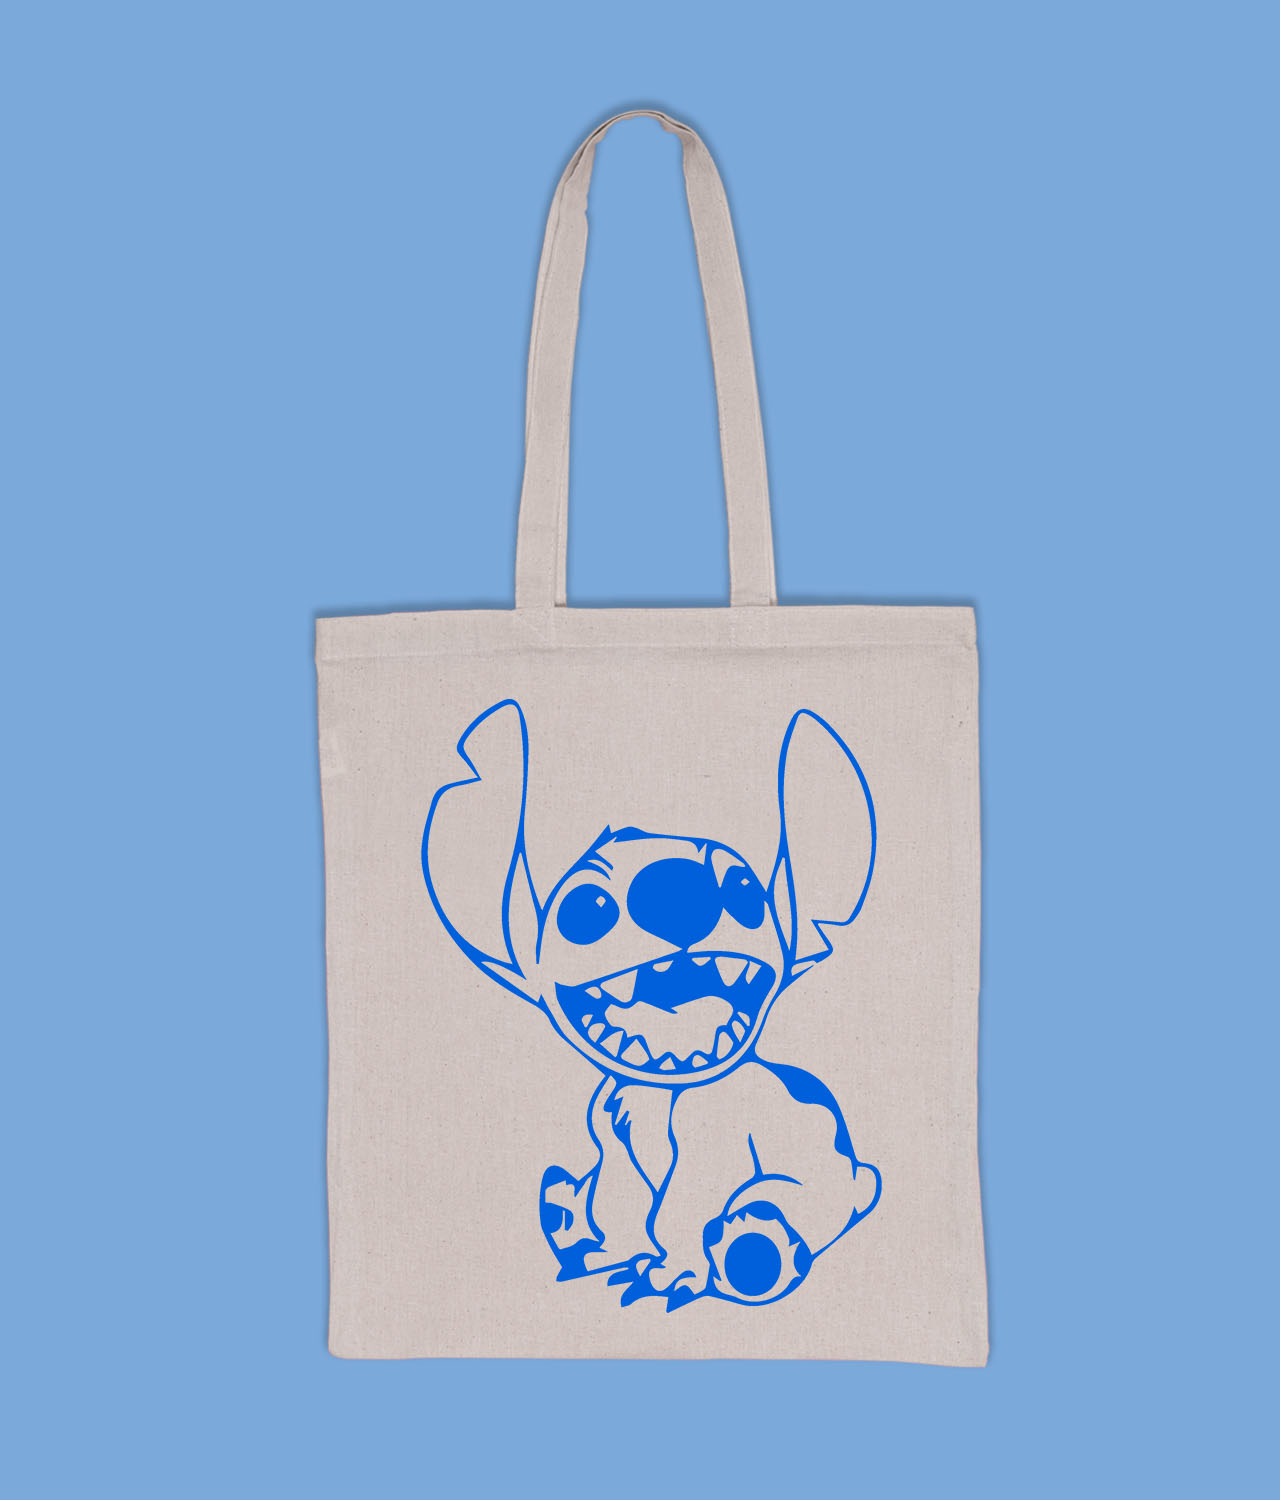 Stitch Cooler Bag, Lilo & Stitch